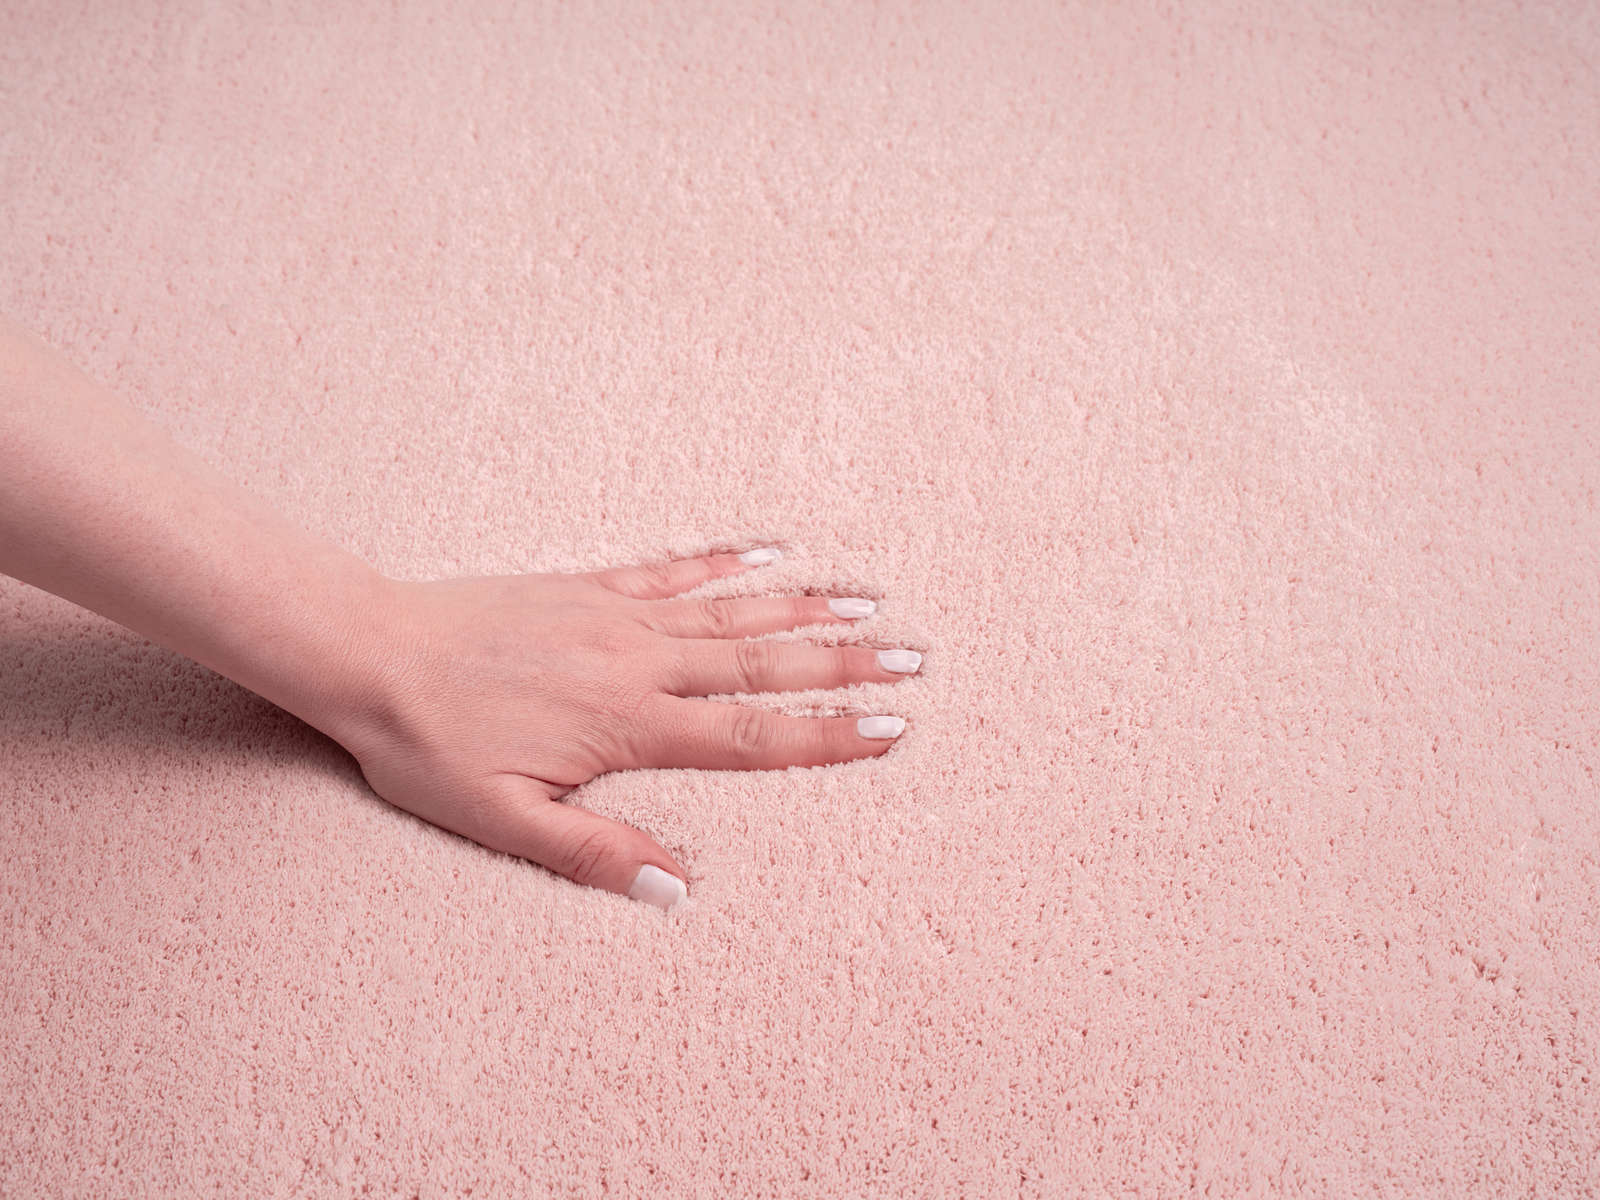             Zarter Hochflor Teppich in Rosa – 110 x 60 cm
        